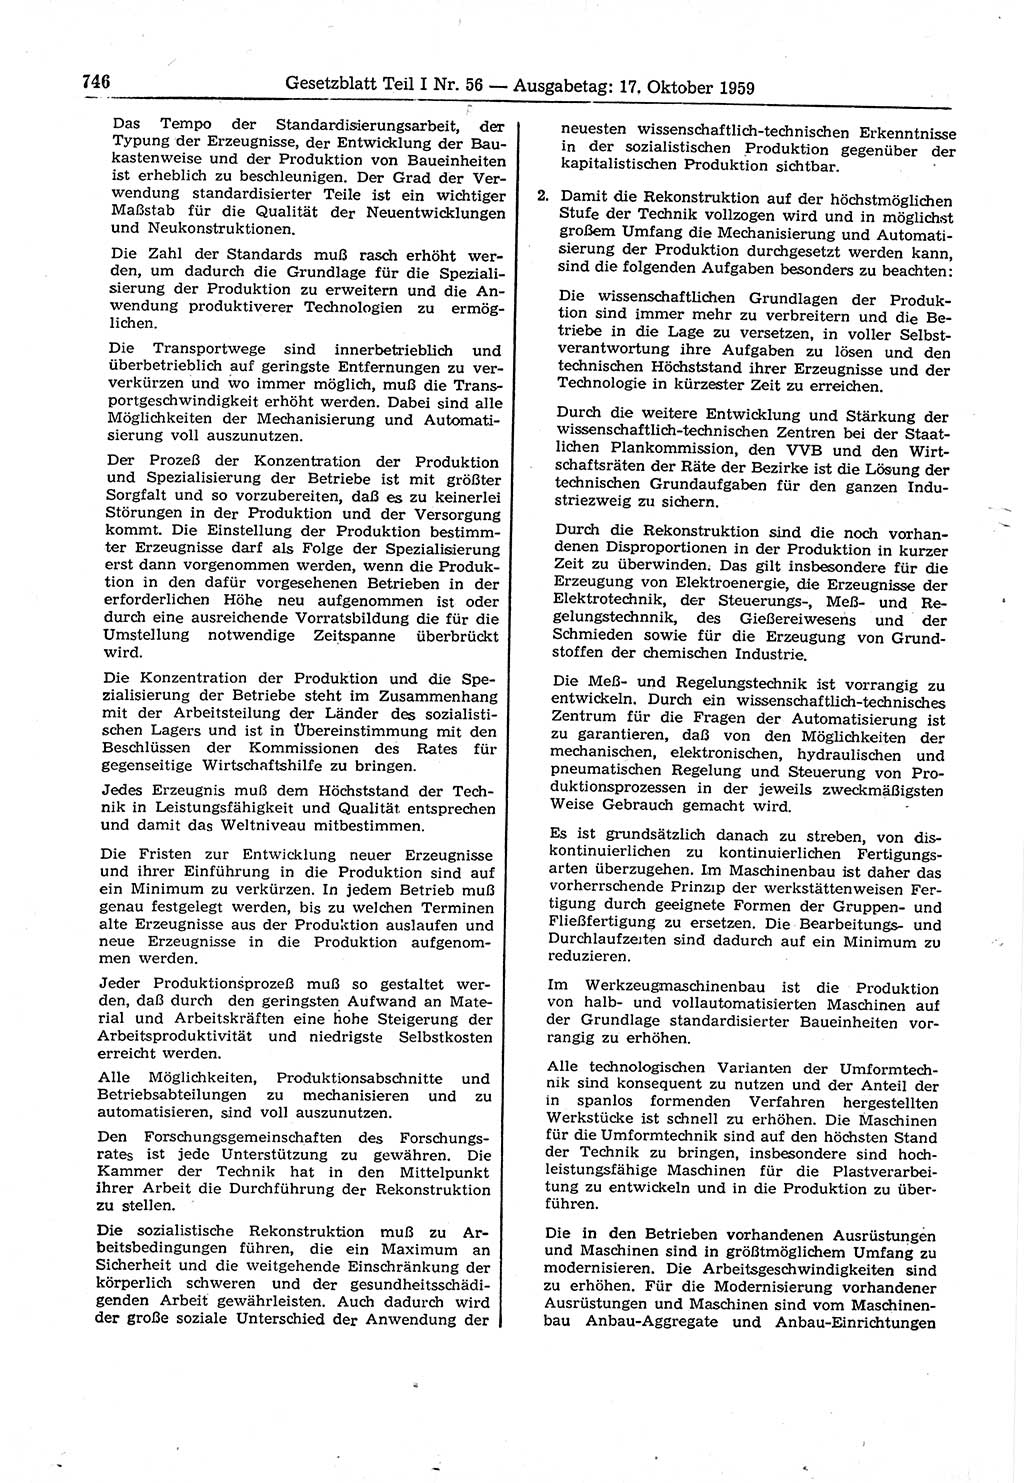 Gesetzblatt (GBl.) der Deutschen Demokratischen Republik (DDR) Teil Ⅰ 1959, Seite 746 (GBl. DDR Ⅰ 1959, S. 746)